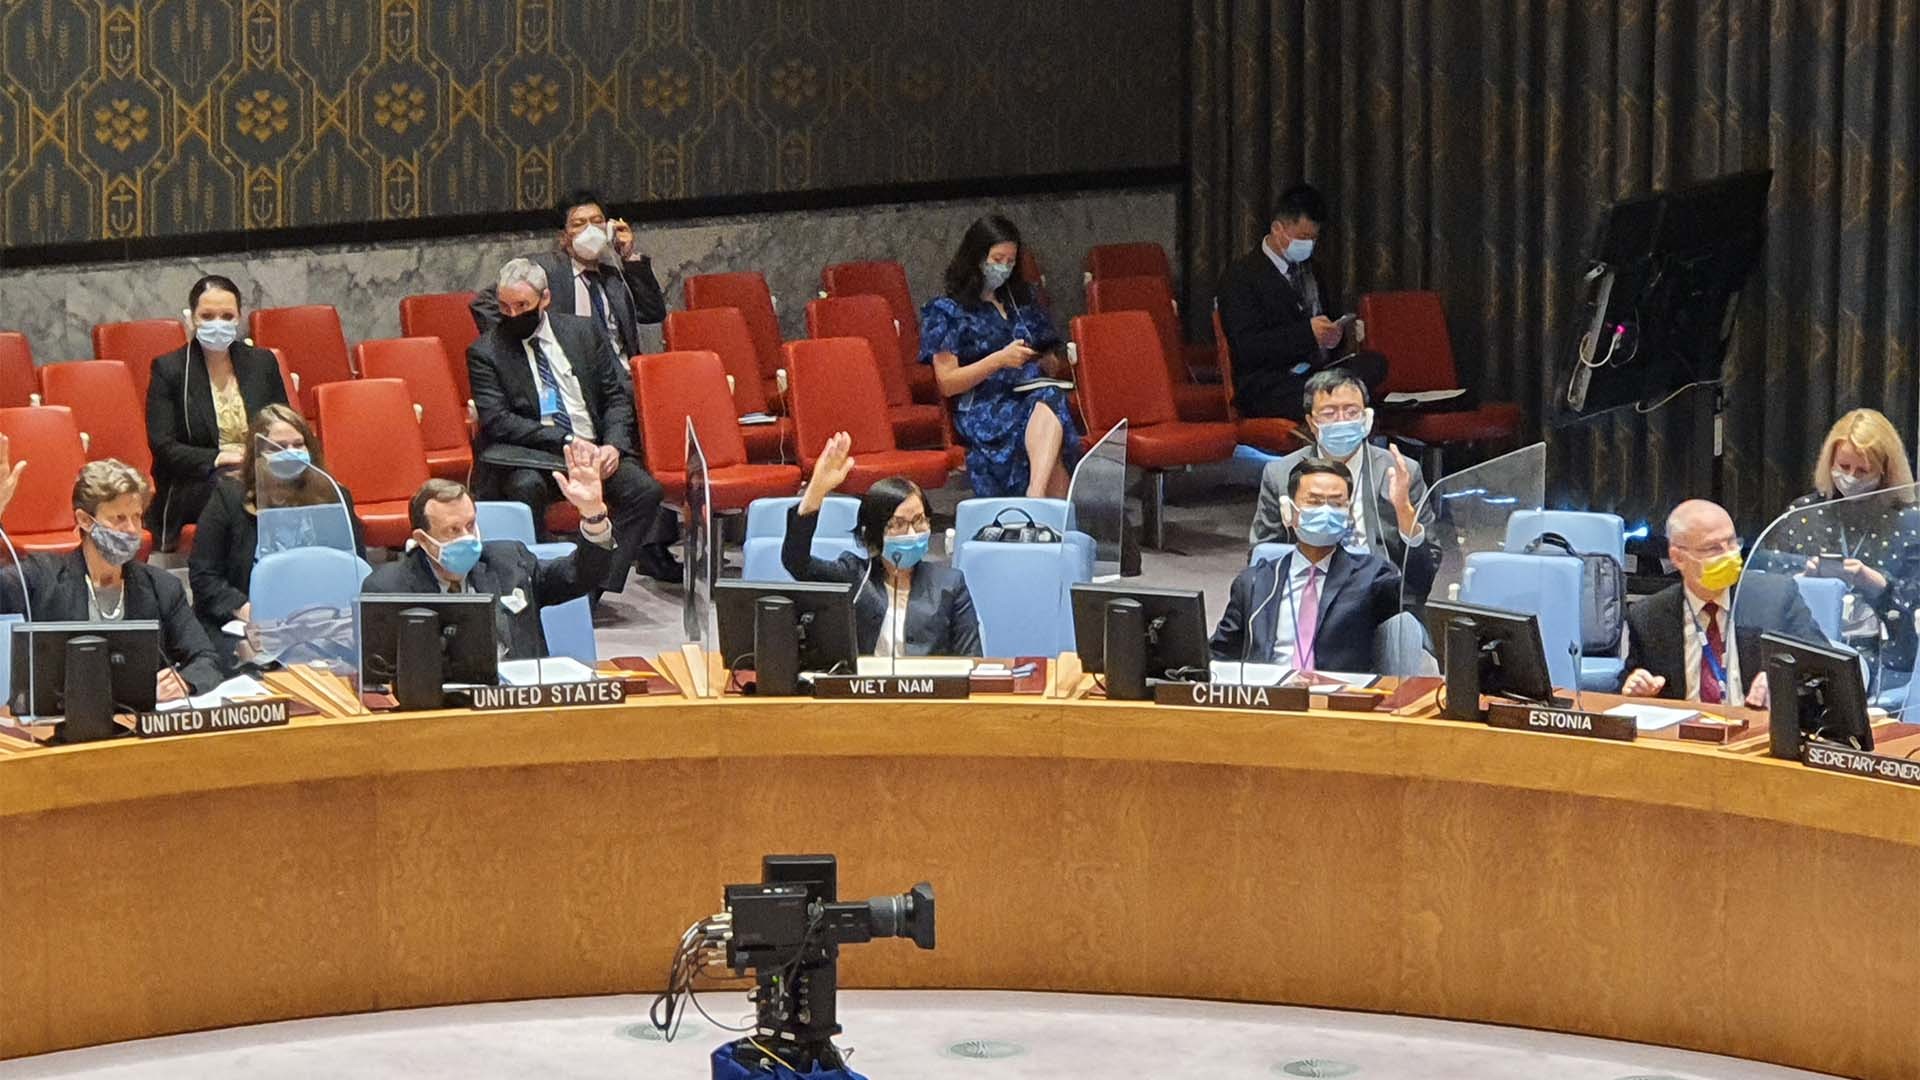 Hội đồng Bảo an Liên hợp quốc đã nhất trí thông qua Nghị quyết số 2586 về việc gia hạn hoạt động của Phái bộ LHQ tại thành phố Hodeidah của Yemen thêm 12 tháng.